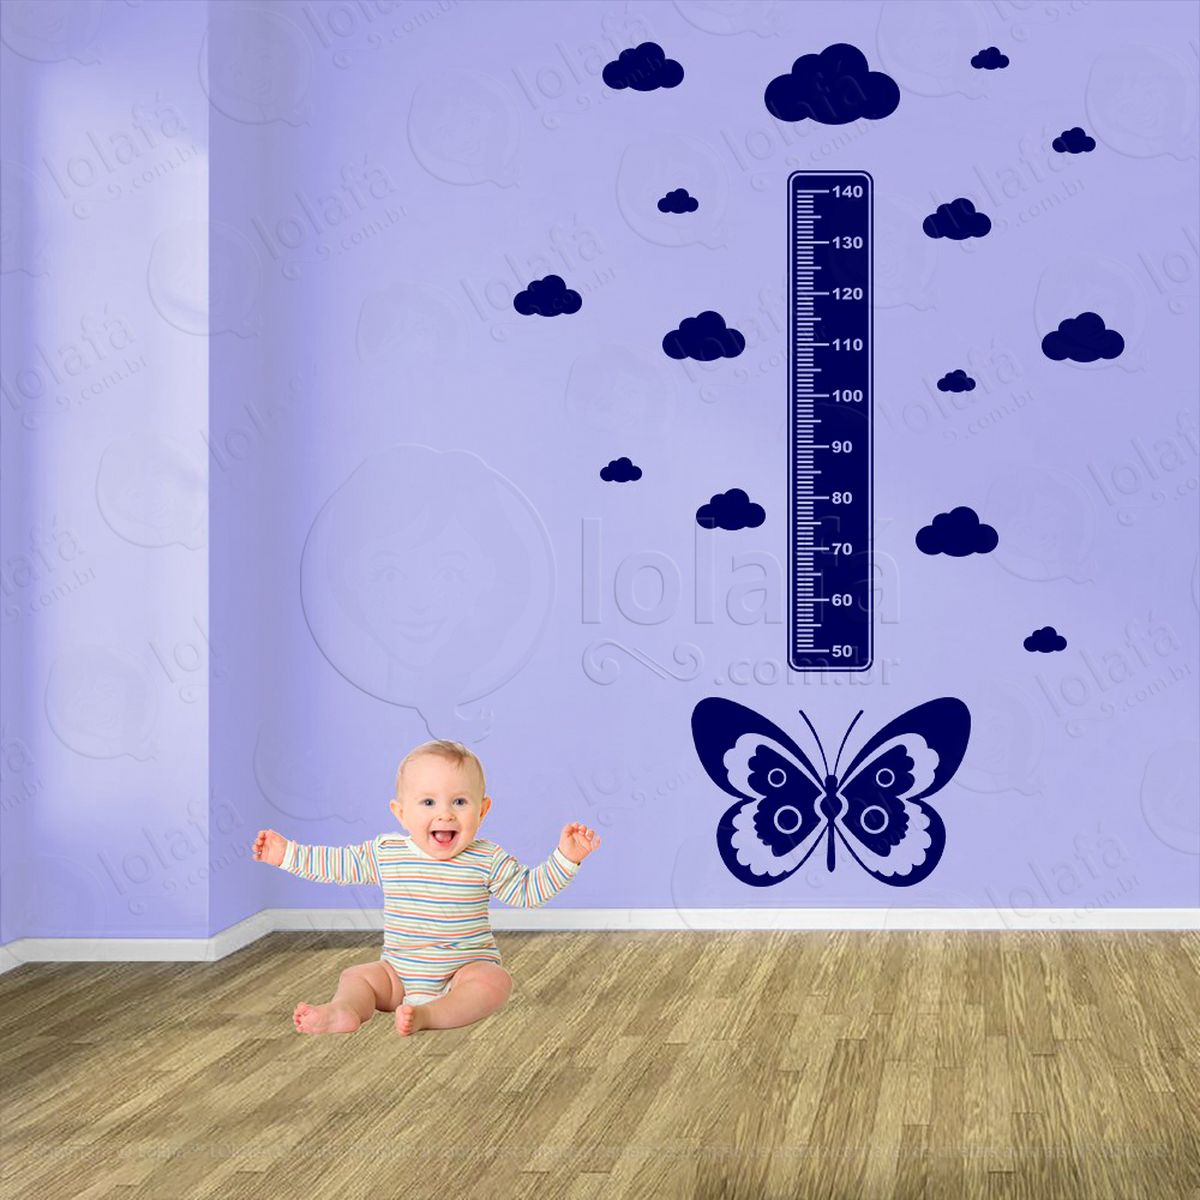 borboleta e nuvens adesivo régua de crescimento infantil, medidor de altura para quarto, porta e parede - mod:537